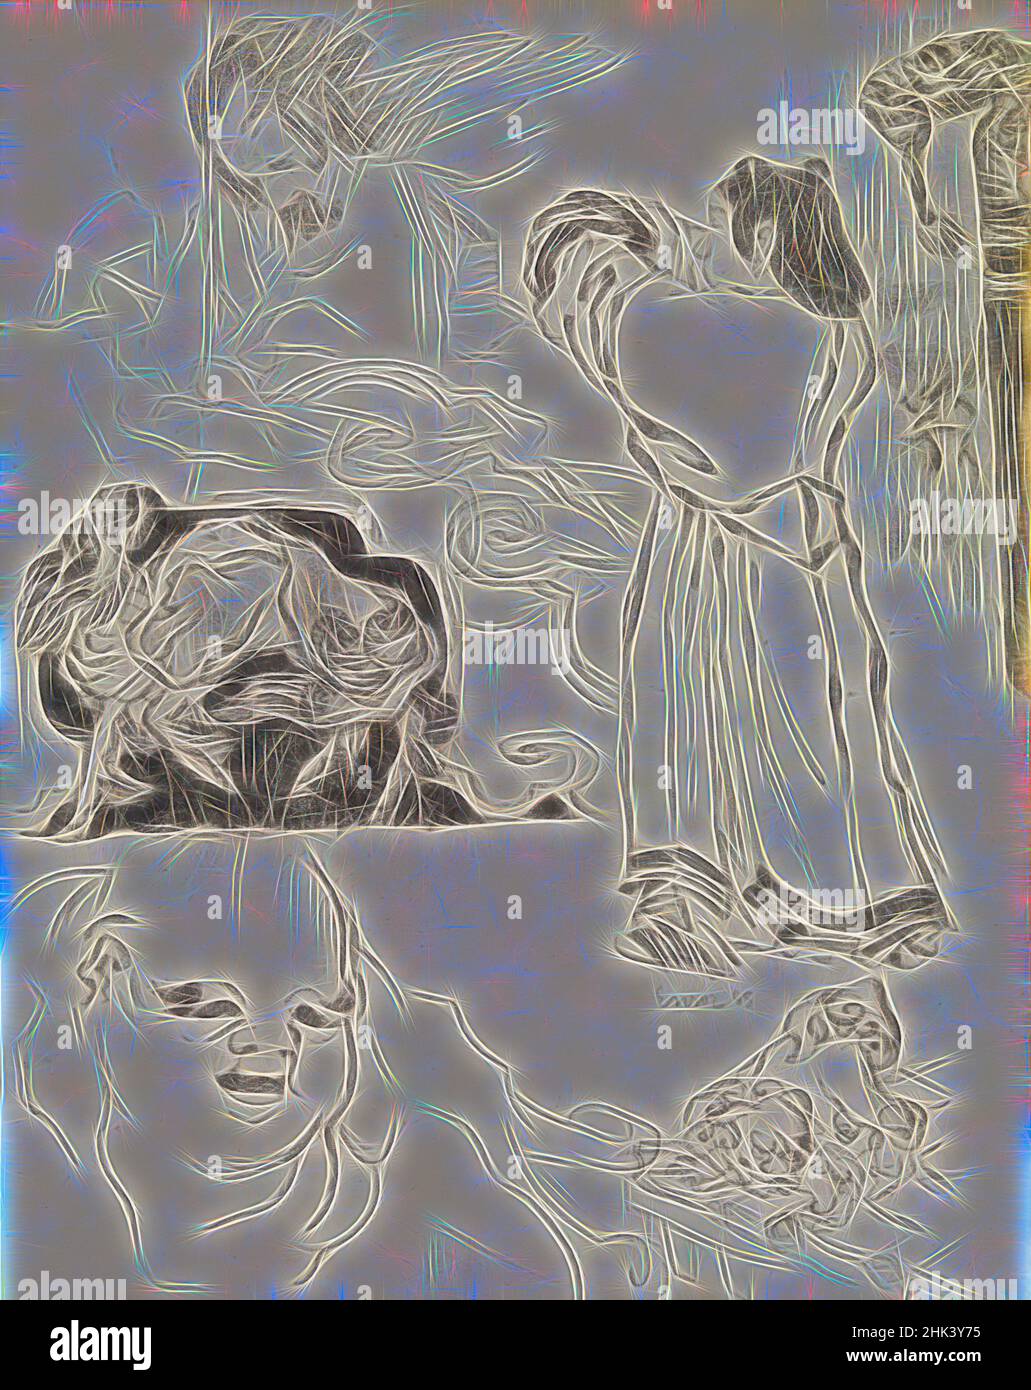 Ispirato da Chinoiserie, James Ensor, 1885, disegno, 1885, Arte belga, reinventata da Artotop. L'arte classica reinventata con un tocco moderno. Design di calda e allegra luminosità e di raggi di luce. La fotografia si ispira al surrealismo e al futurismo, abbracciando l'energia dinamica della tecnologia moderna, del movimento, della velocità e rivoluzionando la cultura Foto Stock